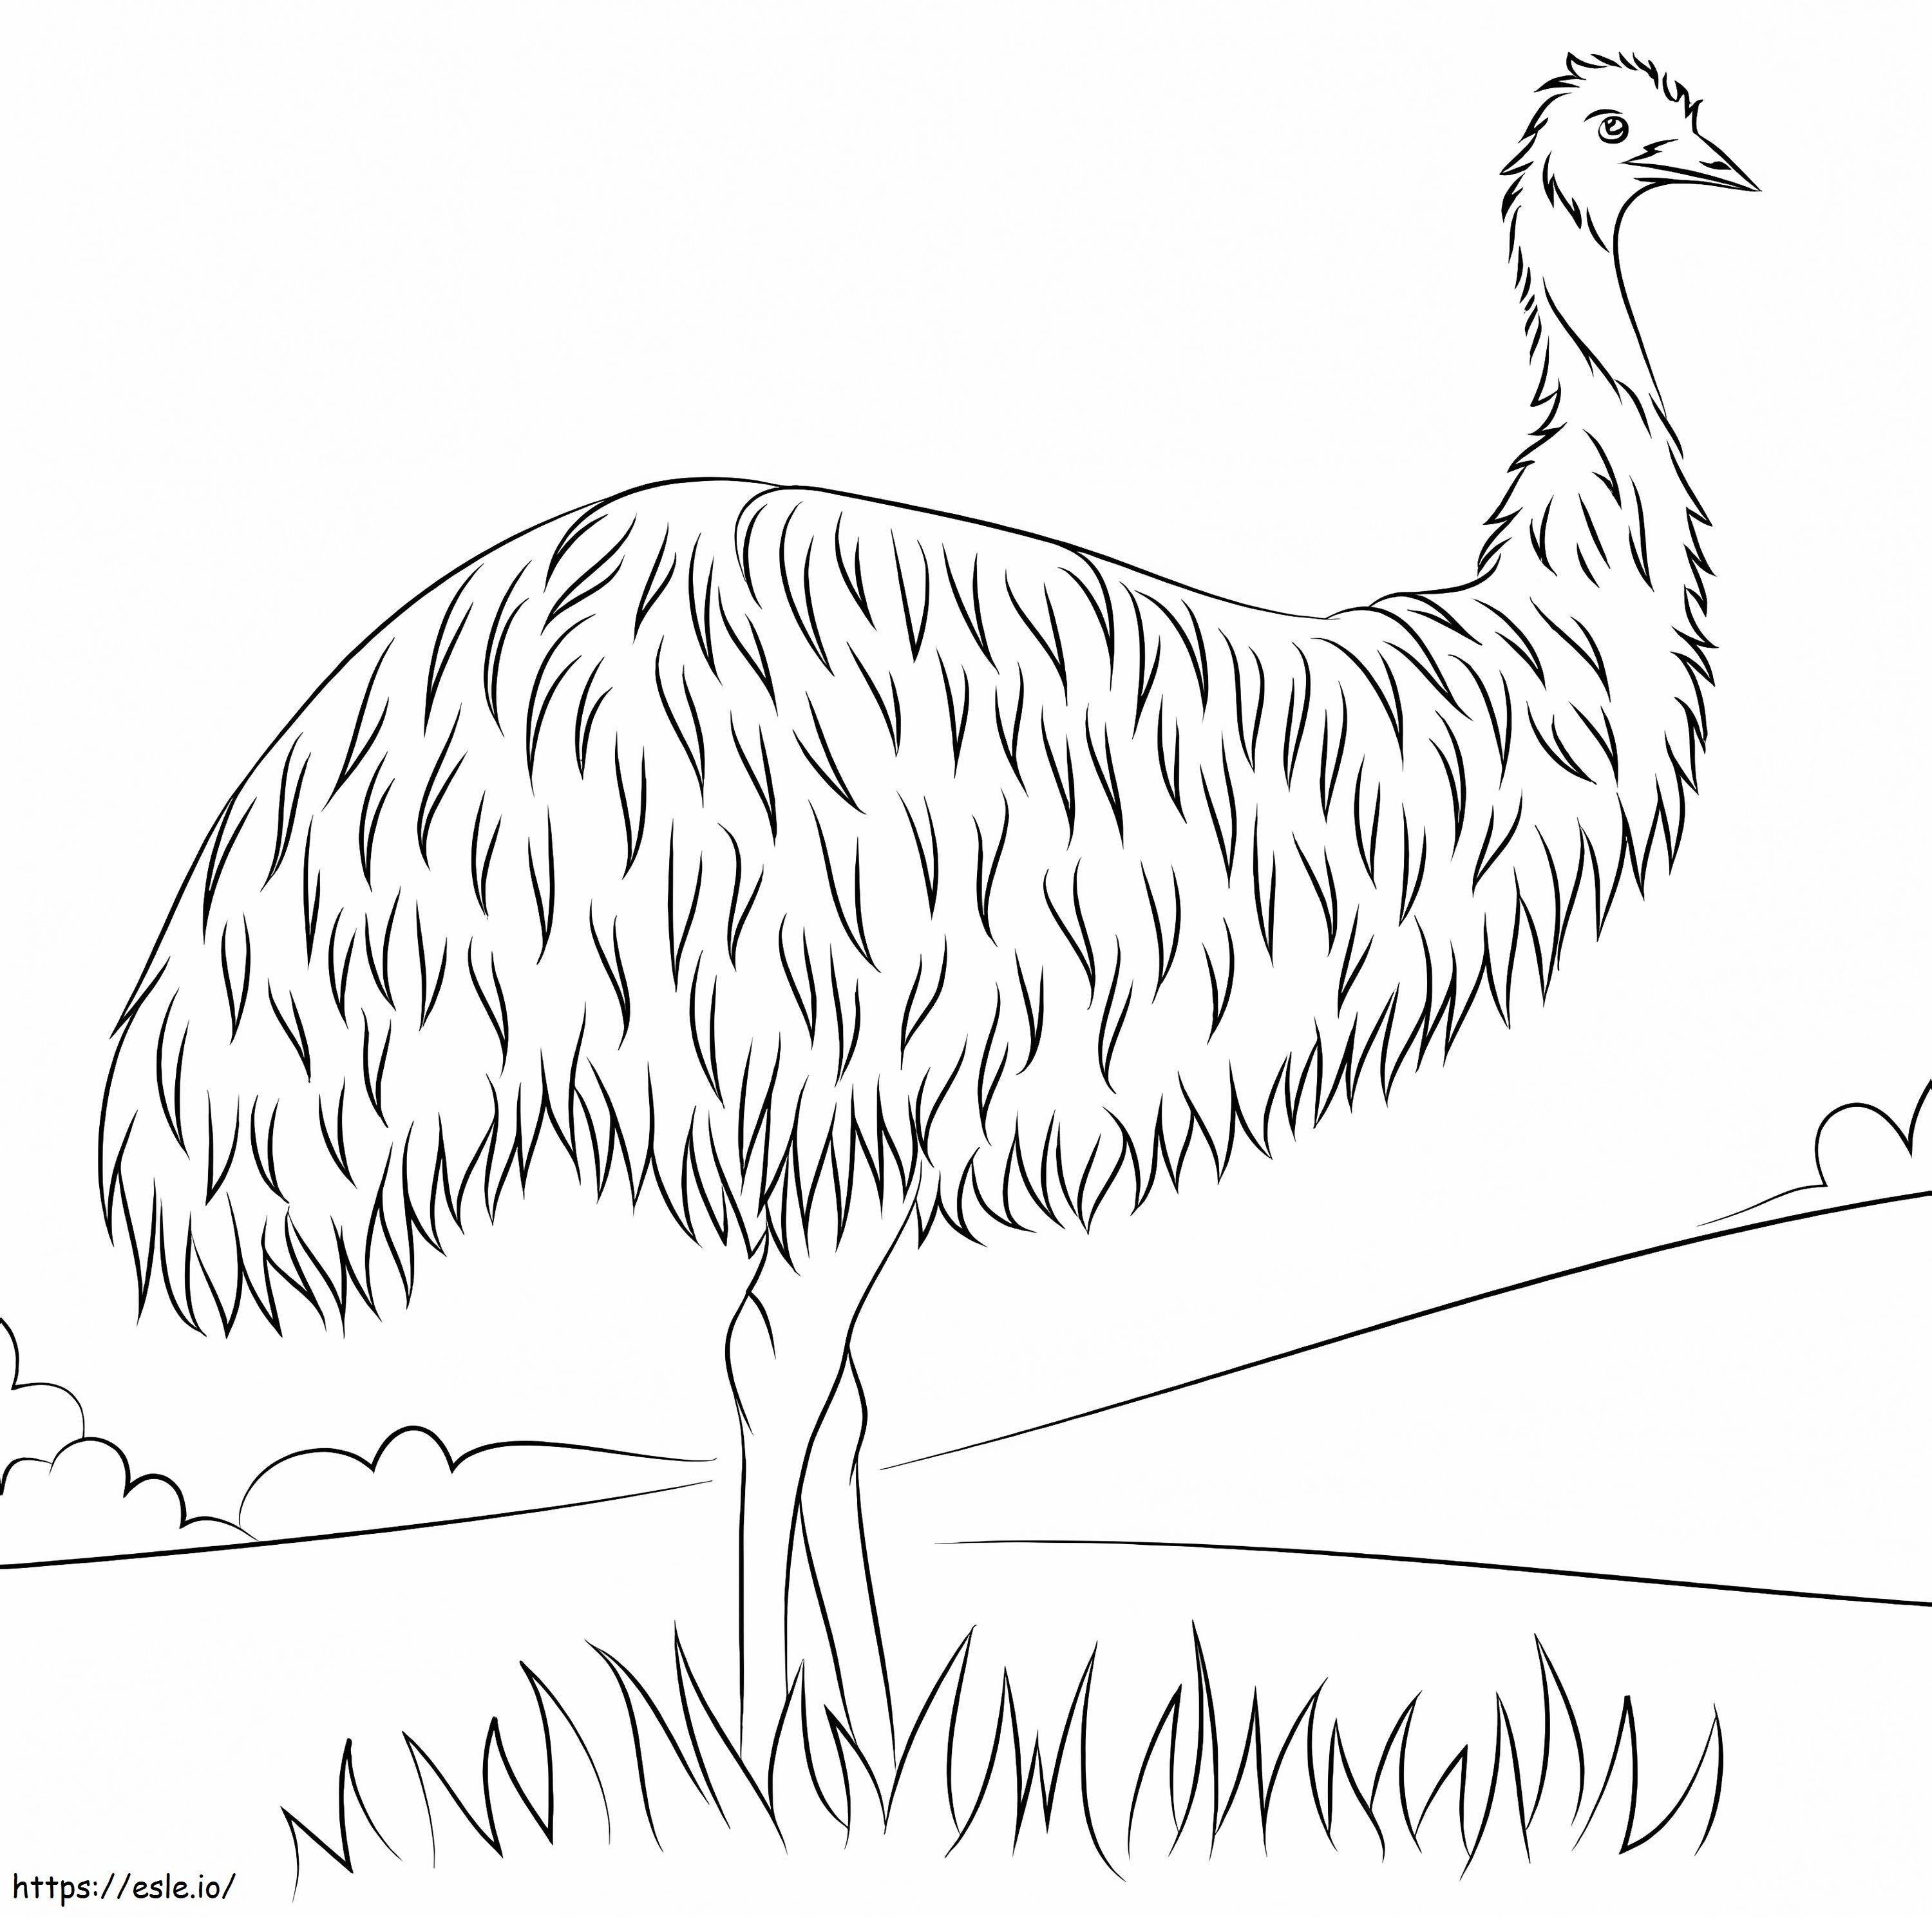 Emù selvaggio da colorare